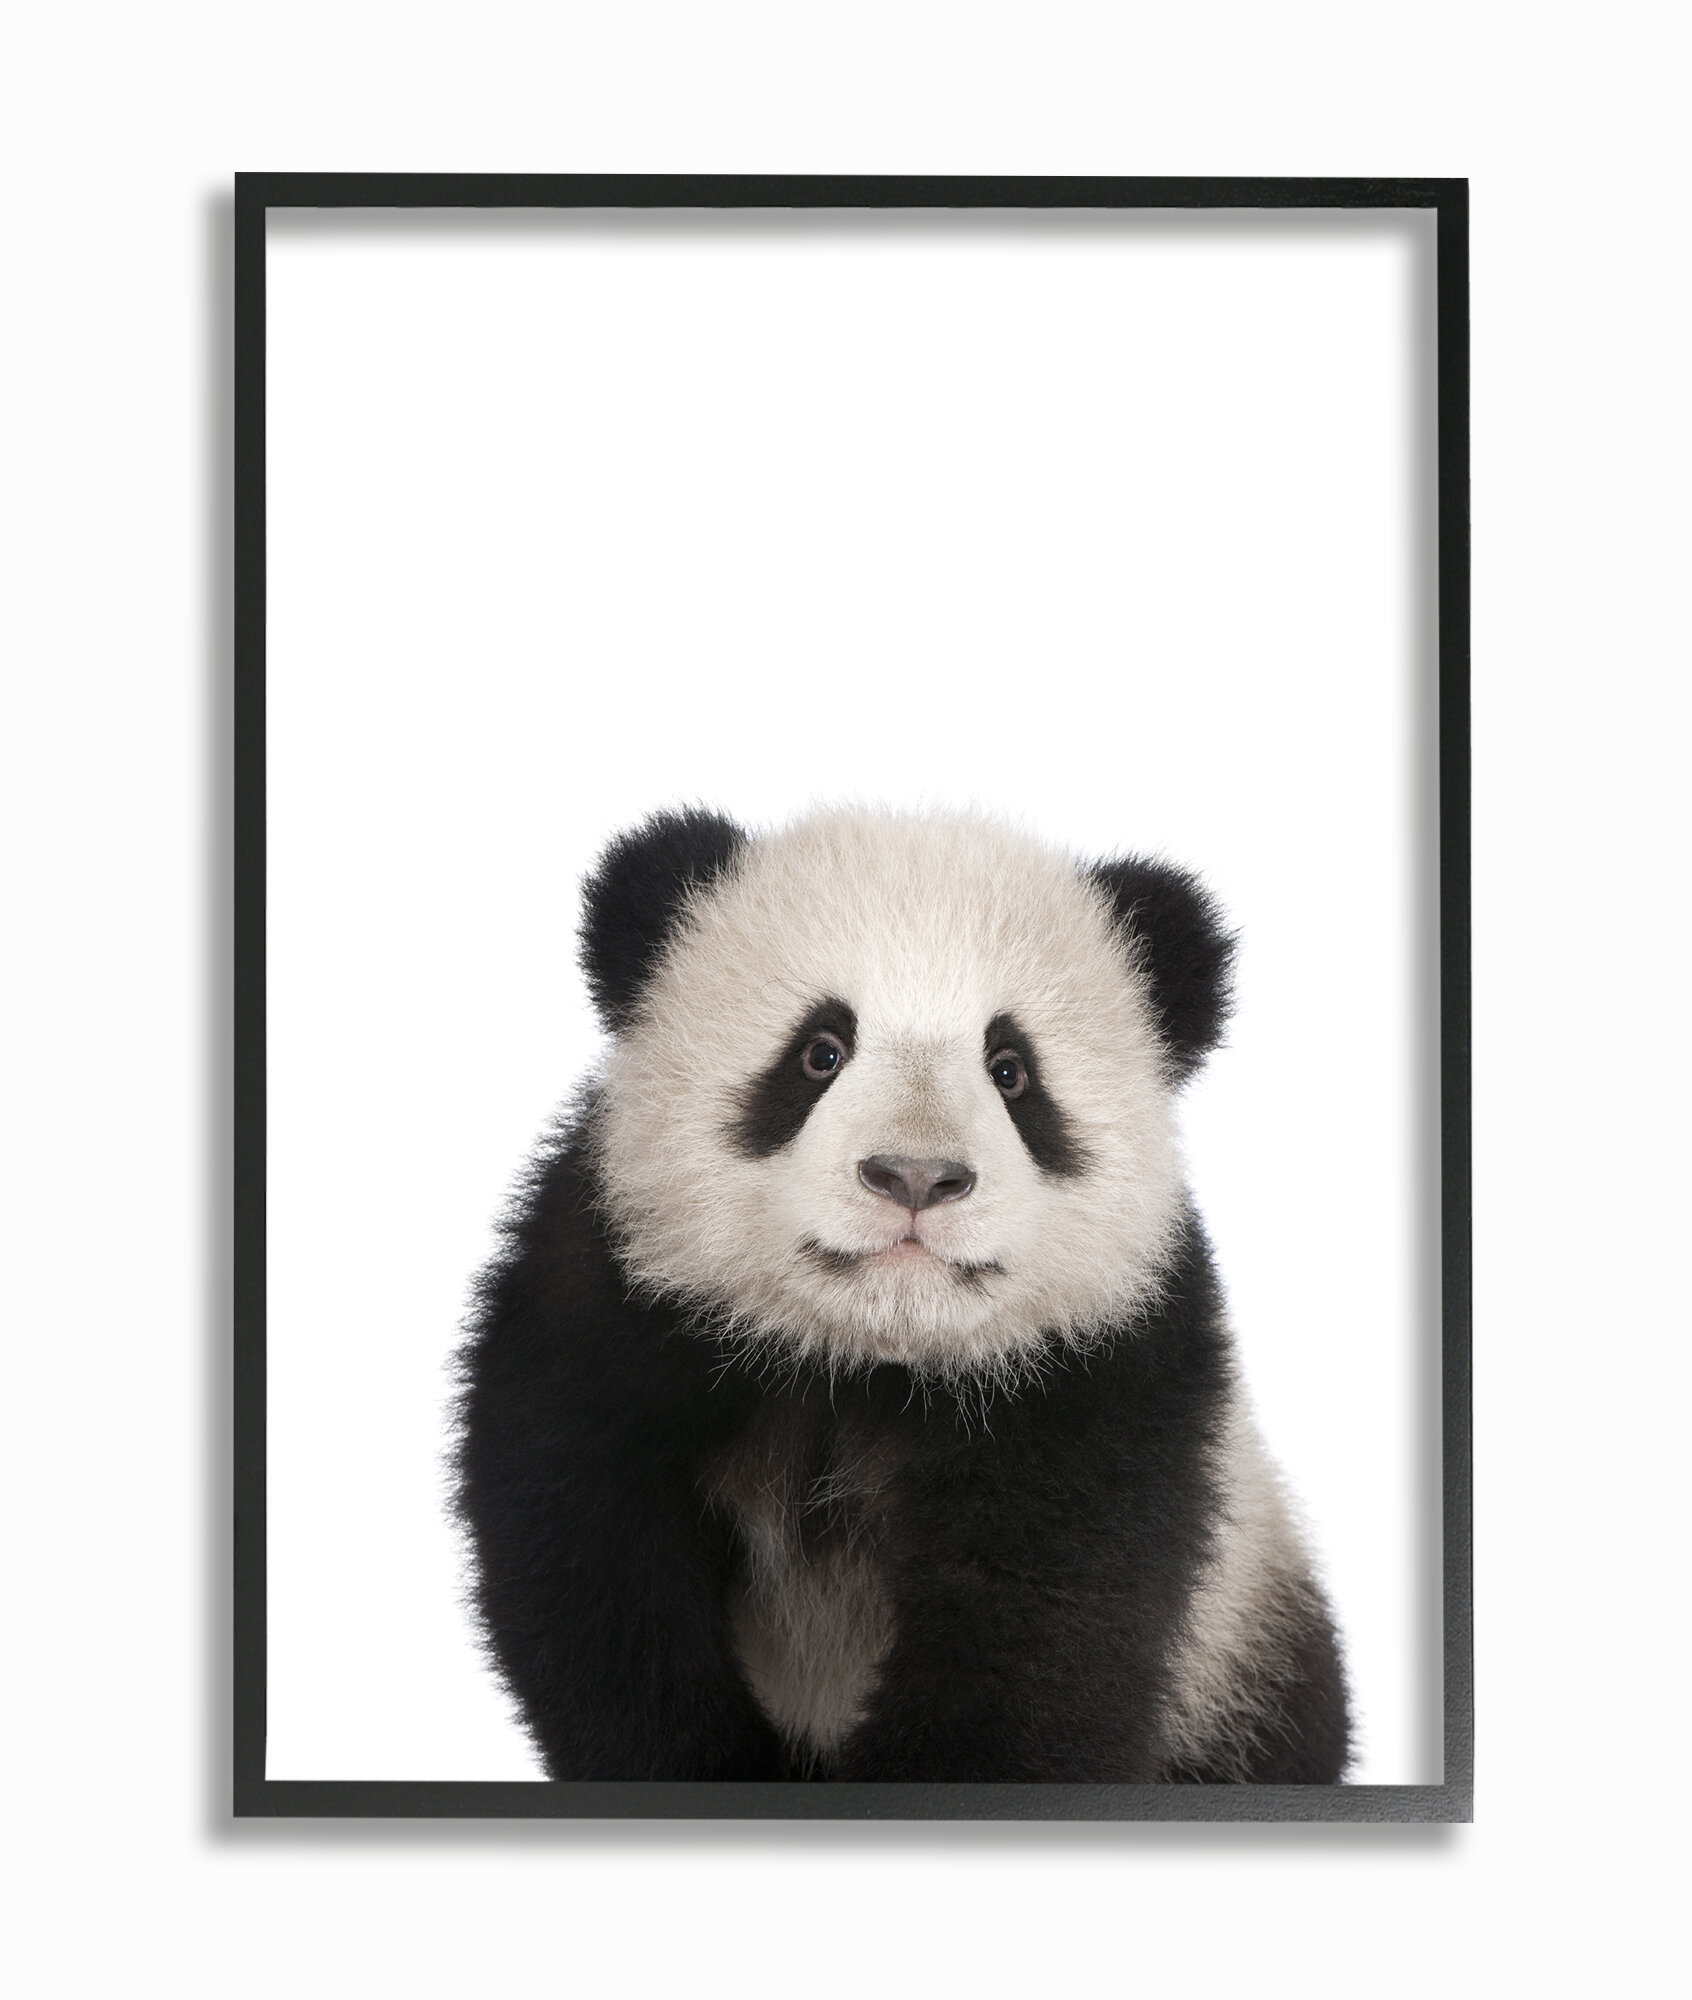 Панда на прозрачном фоне. Панда без фона. Панда в снегу. Яркие постеры Панда.